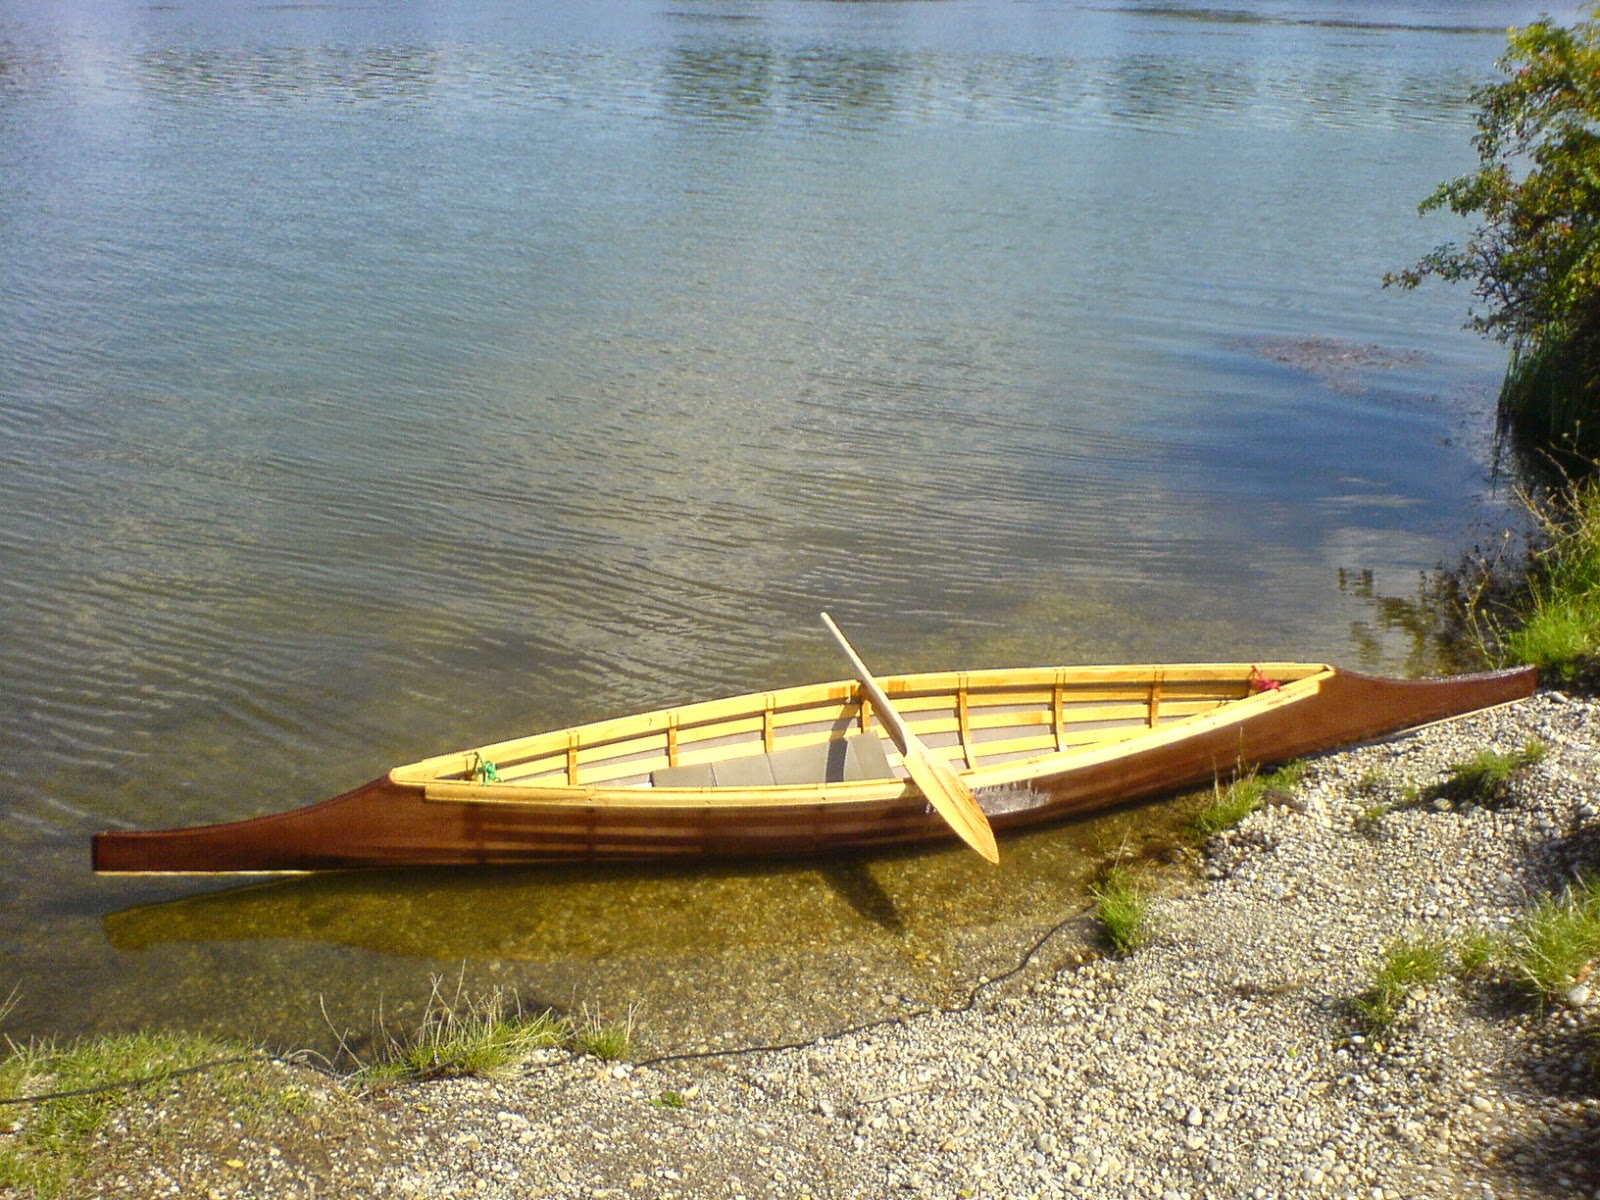 Winner-Kayaks: Sturgeon-nosed canoe - Part 3 or crossing ...